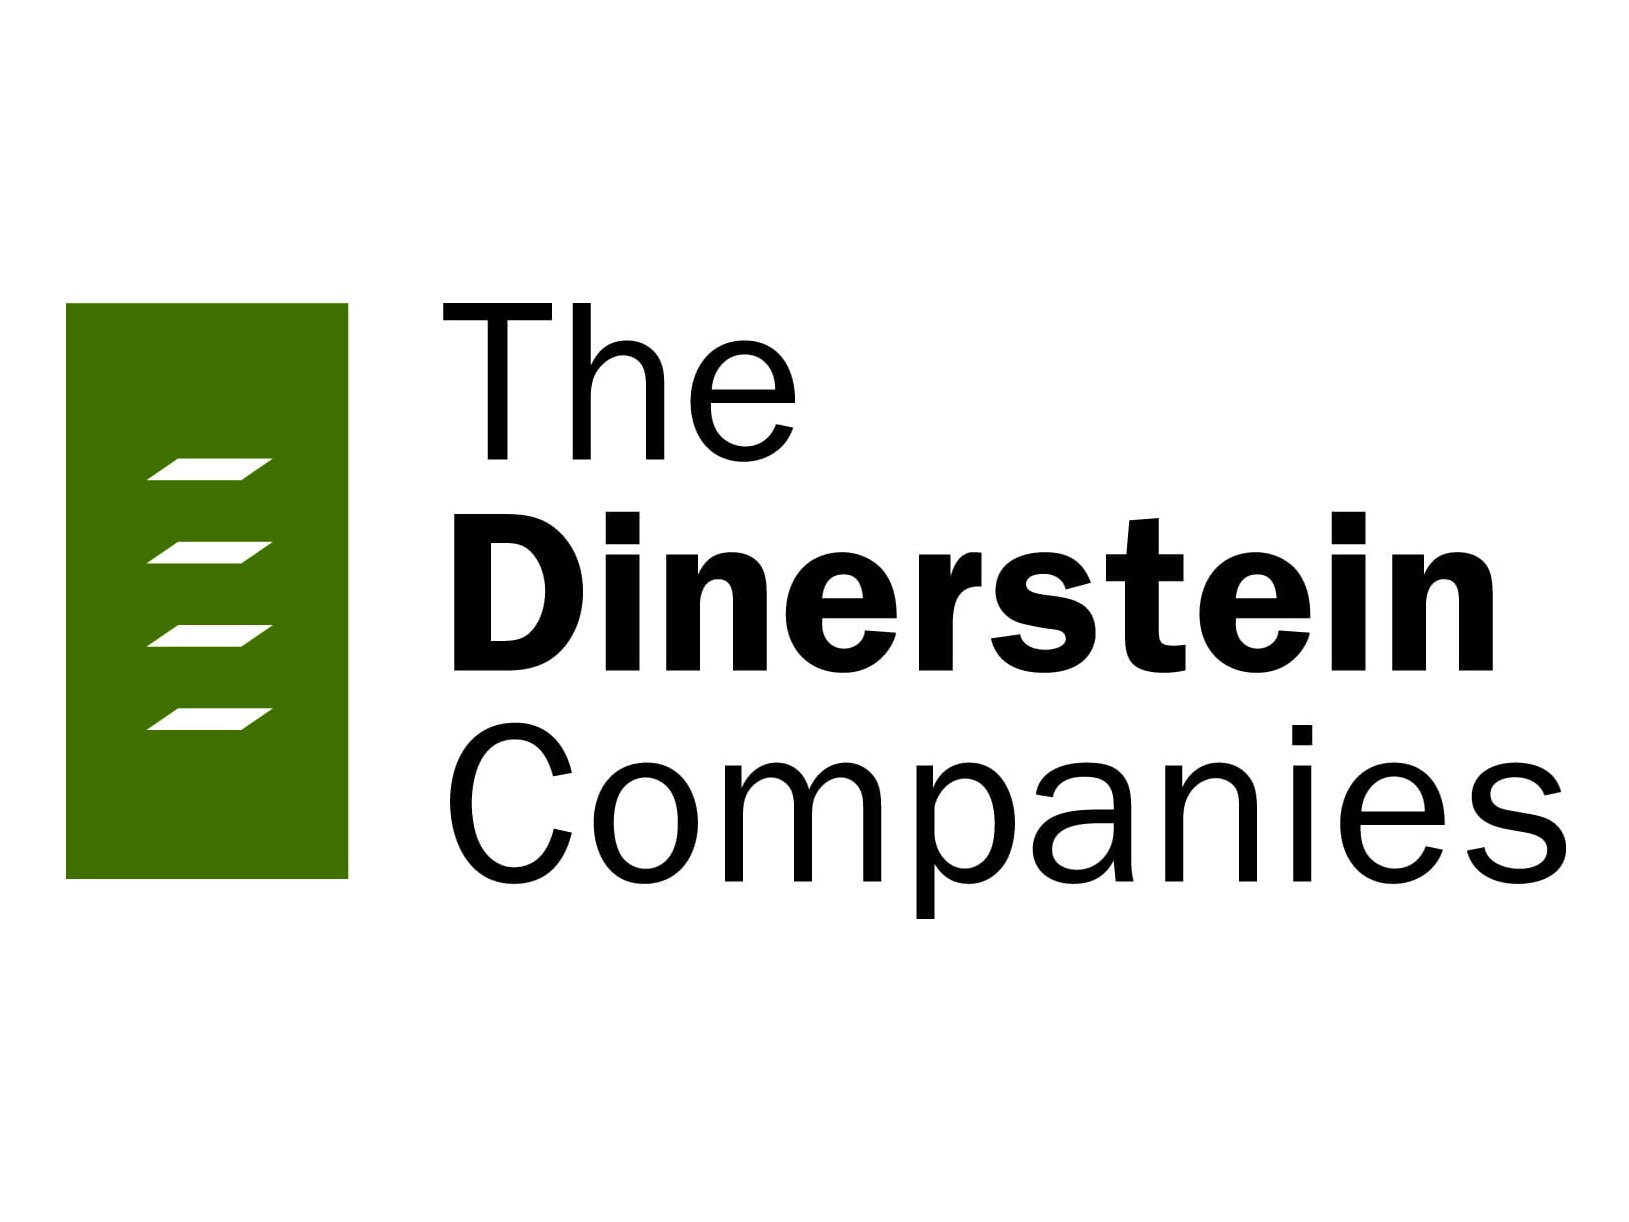 The Dinerstein Companies 201 (internet).jpg